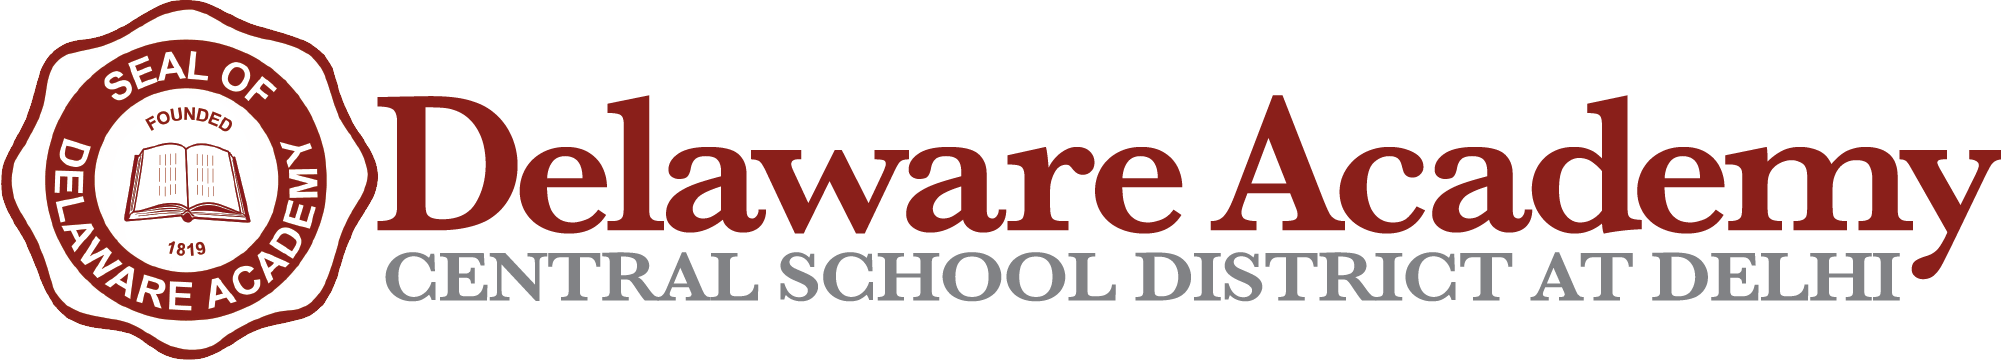 Delaware Academy Central School District At Delhi's Logo